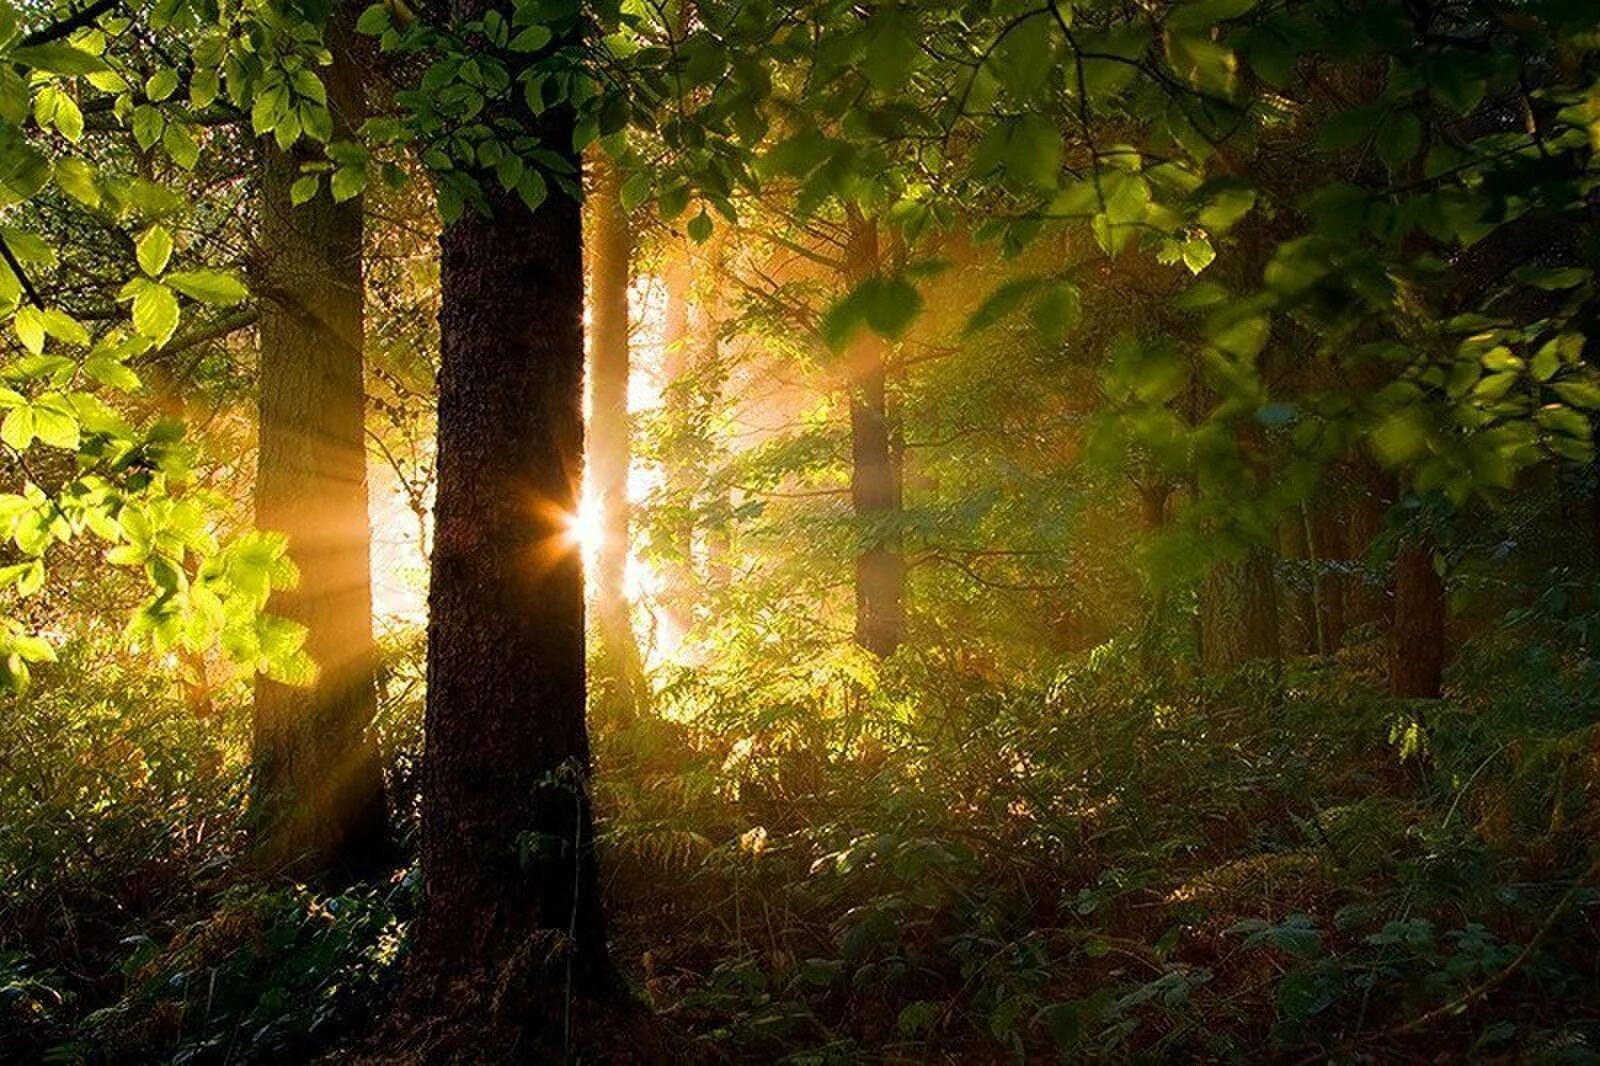 "Солнце в лесу". Лес Освещенный солнцем. Природа солнце. Солнечный лес. Солнце поднимается и лес озаряется ярко